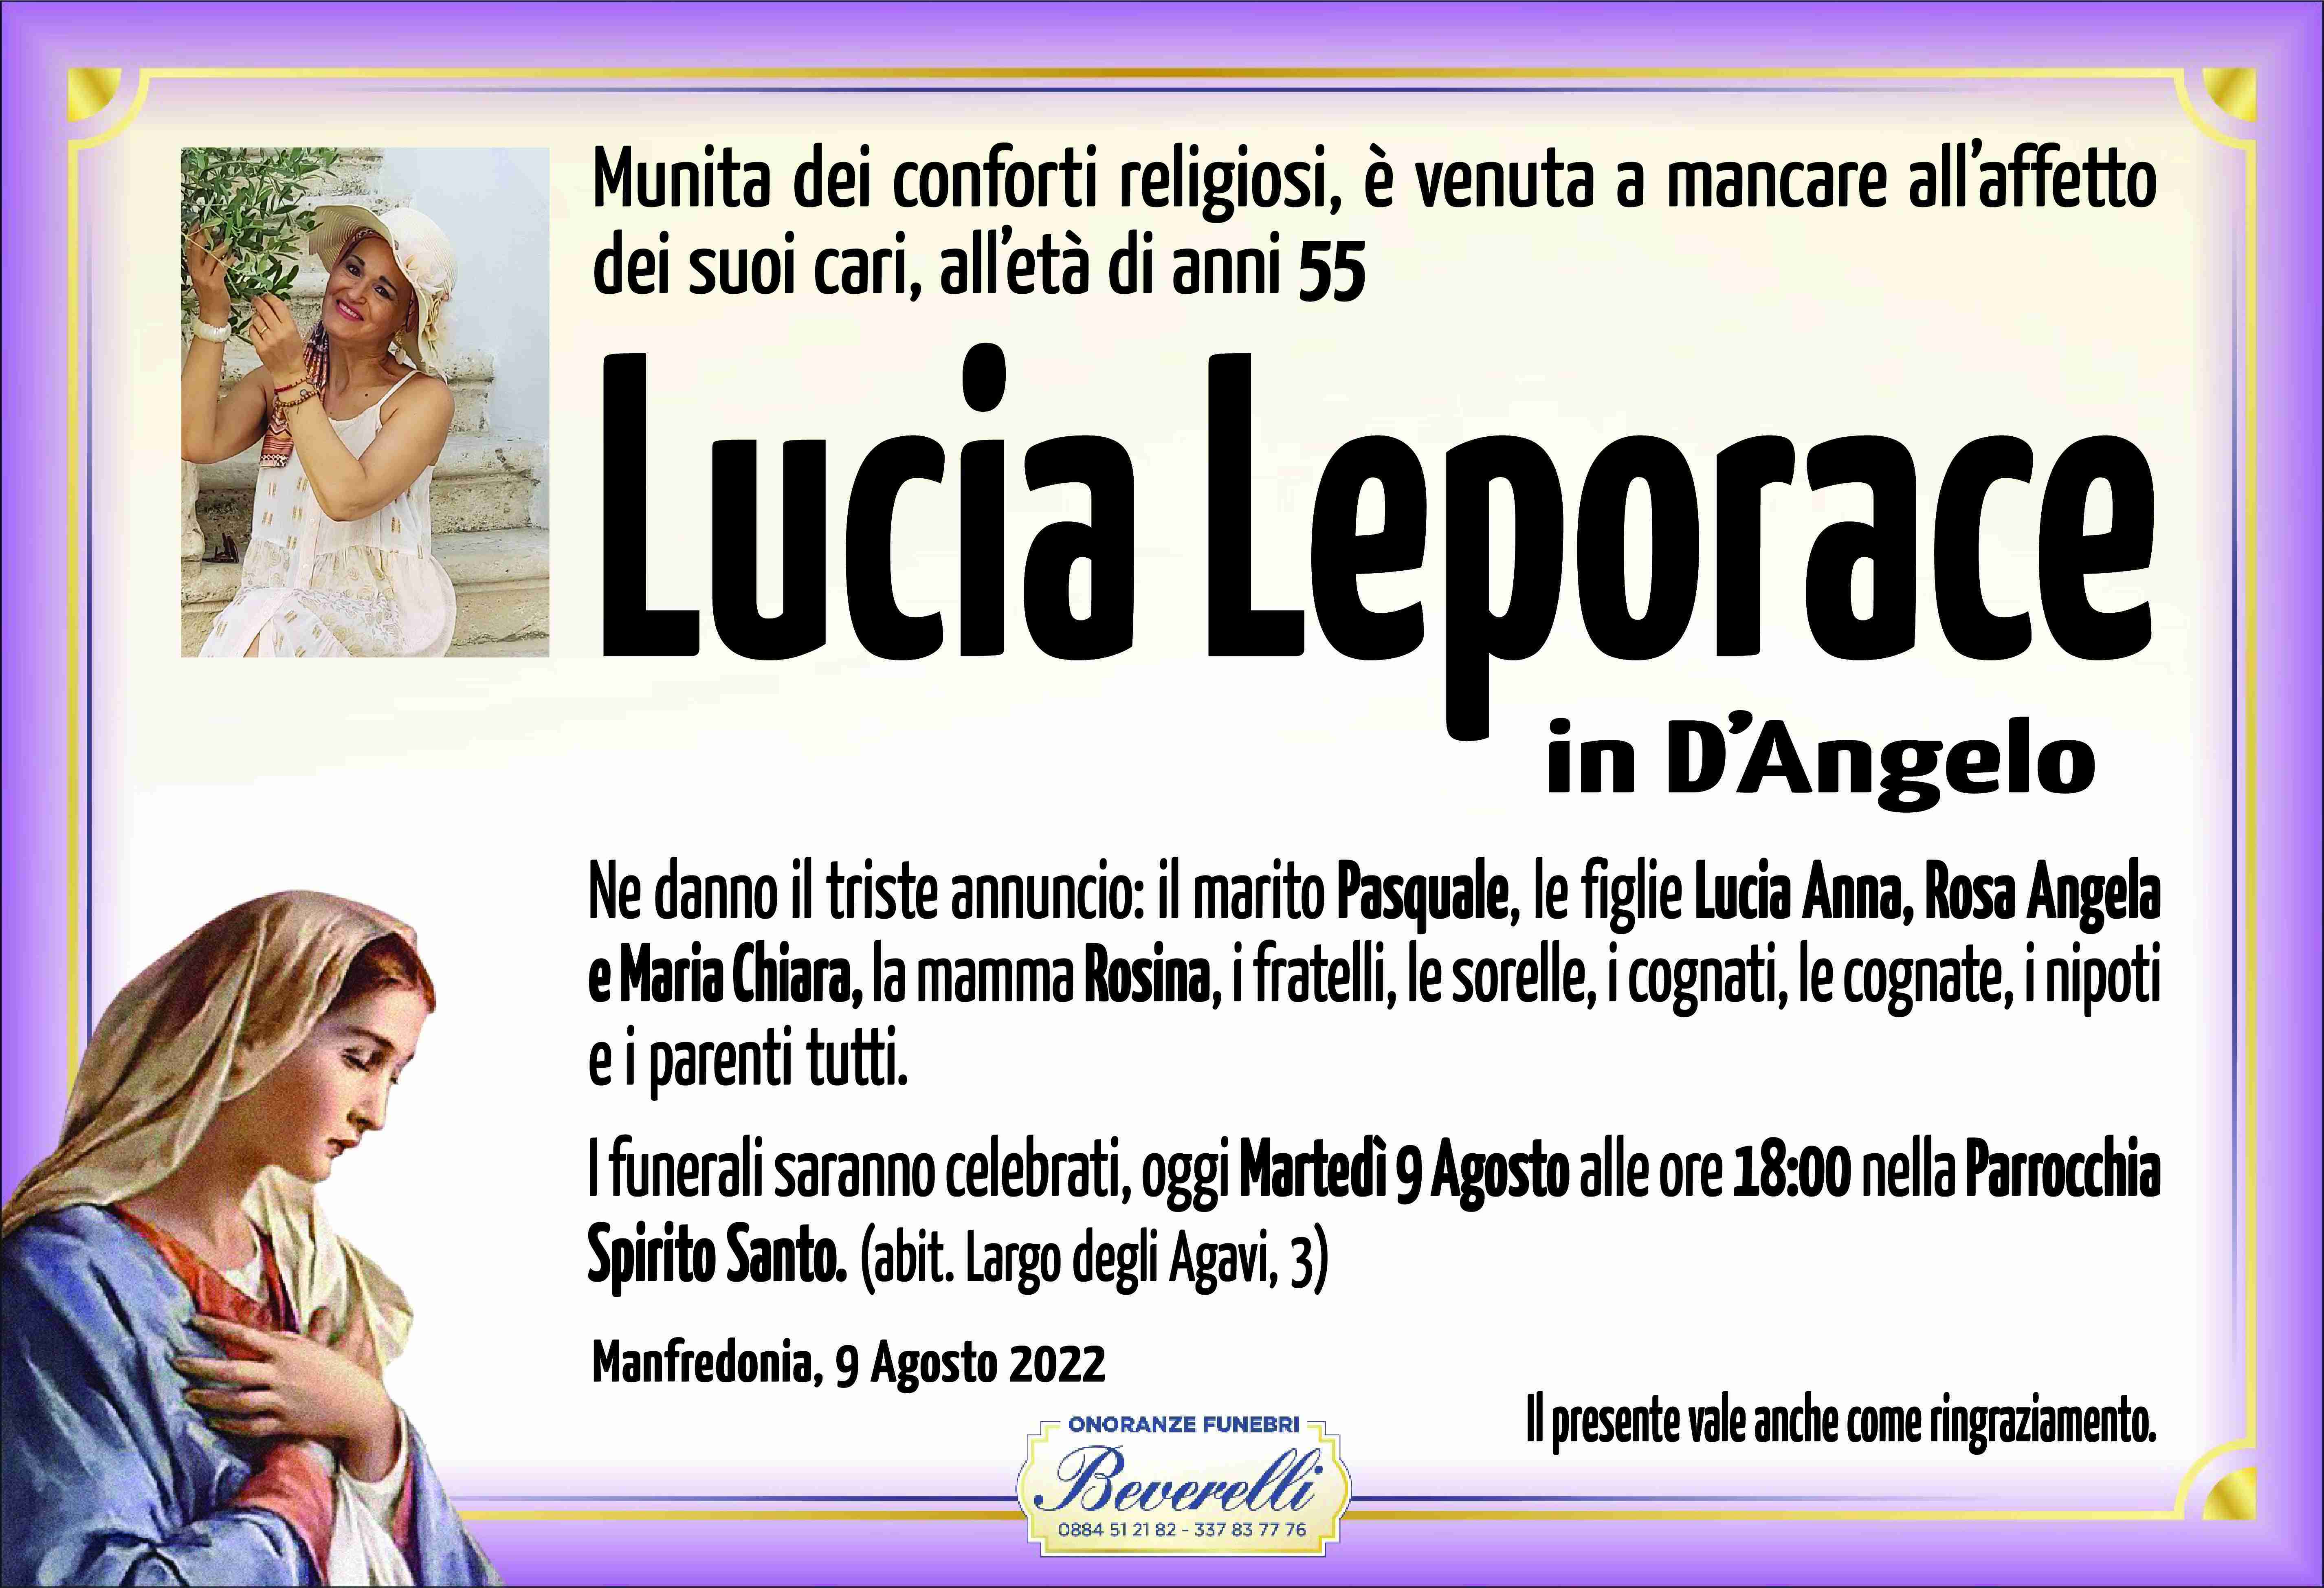 Lucia Leporace